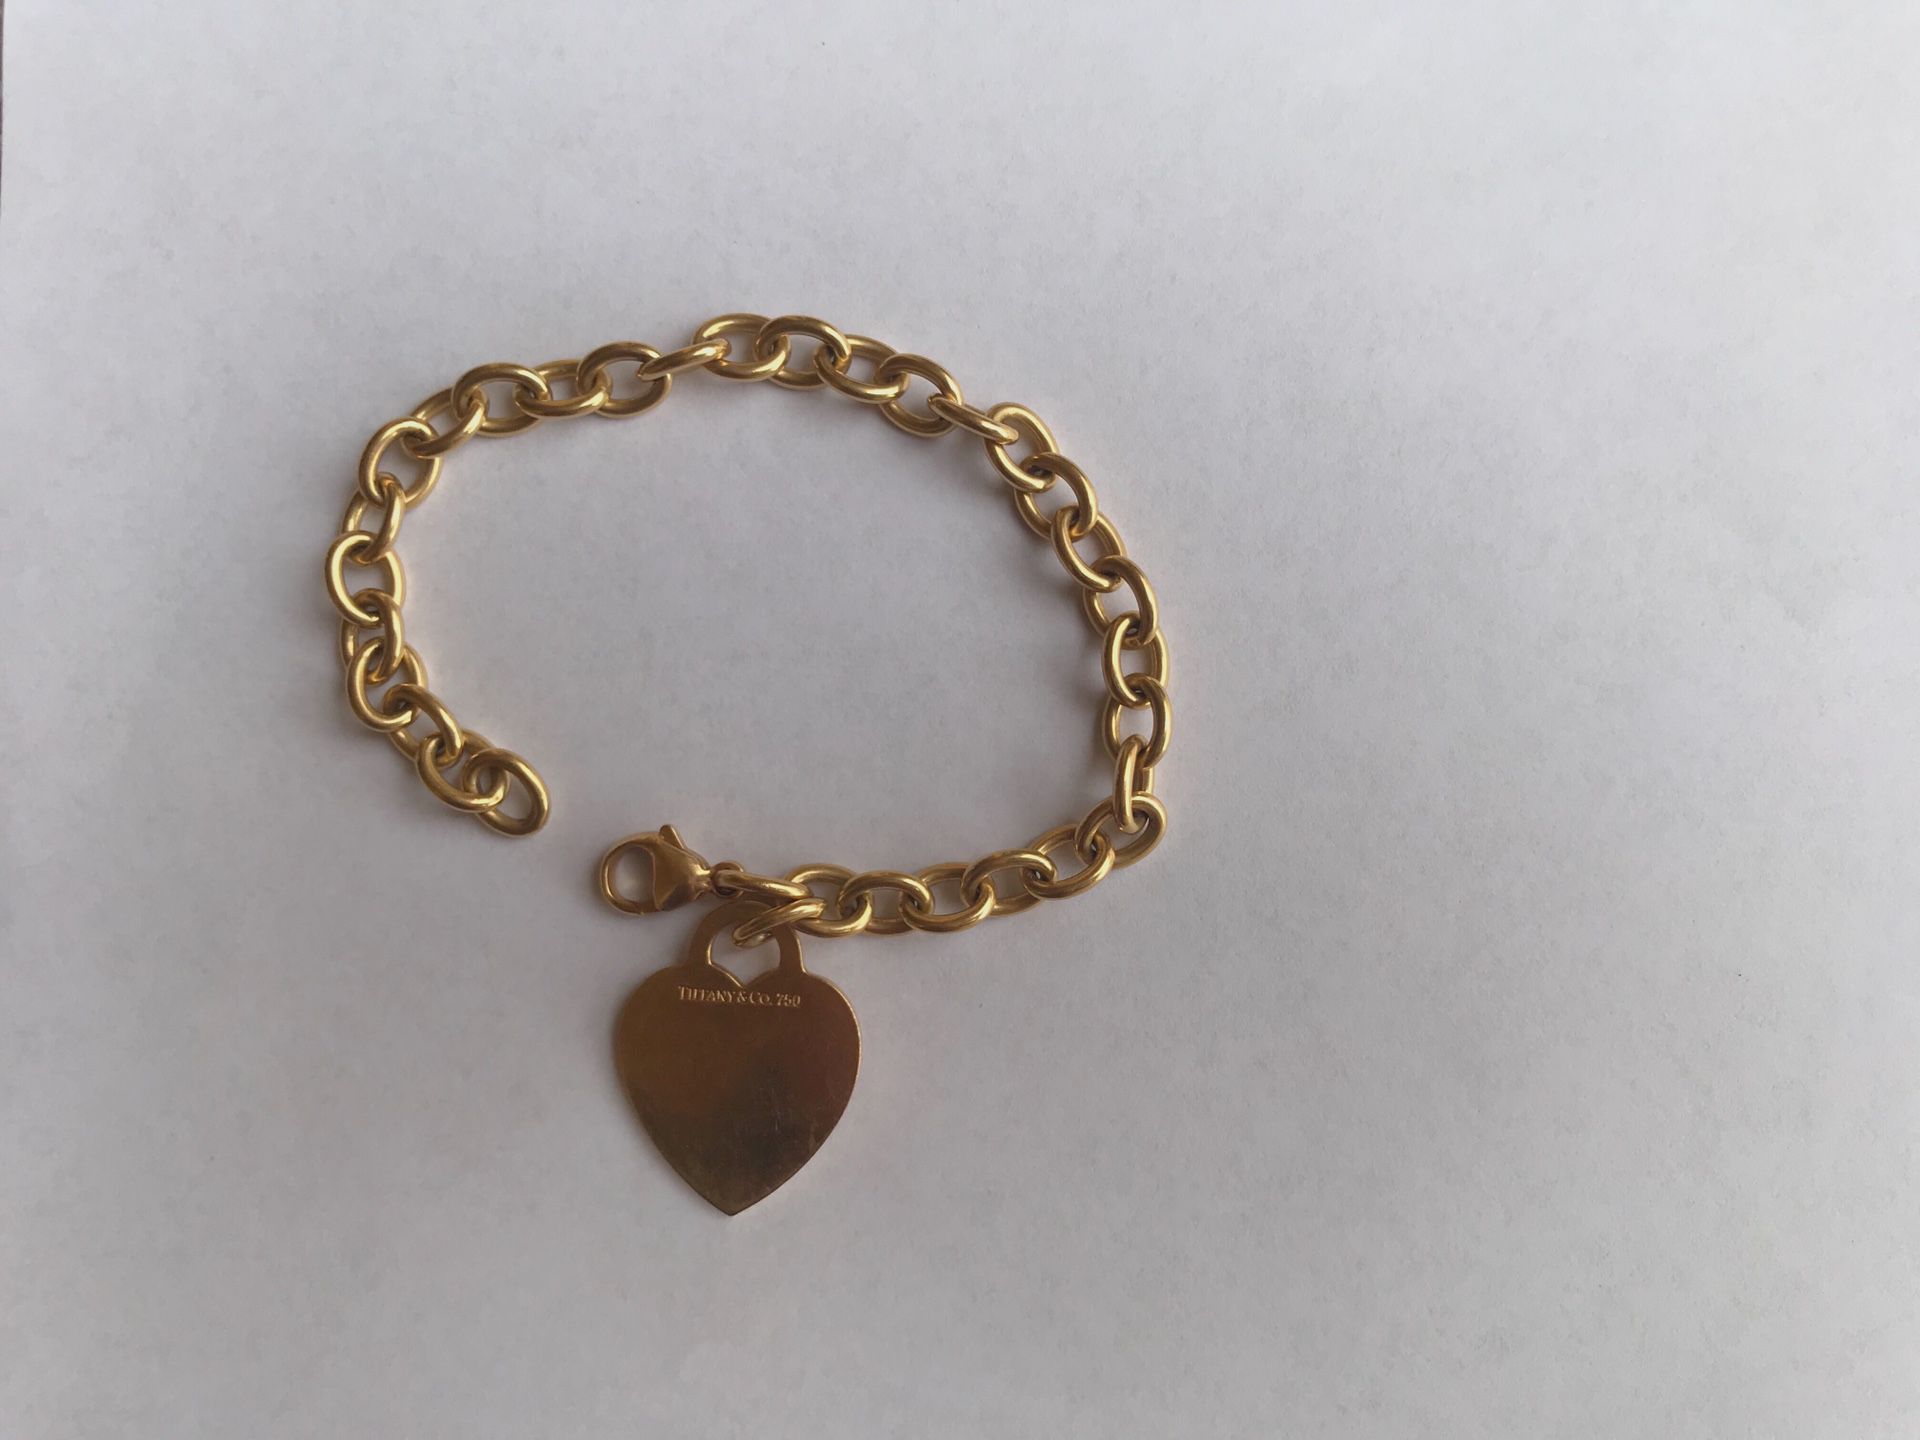 18k yellow gold Tiffany & Co heart bracelet